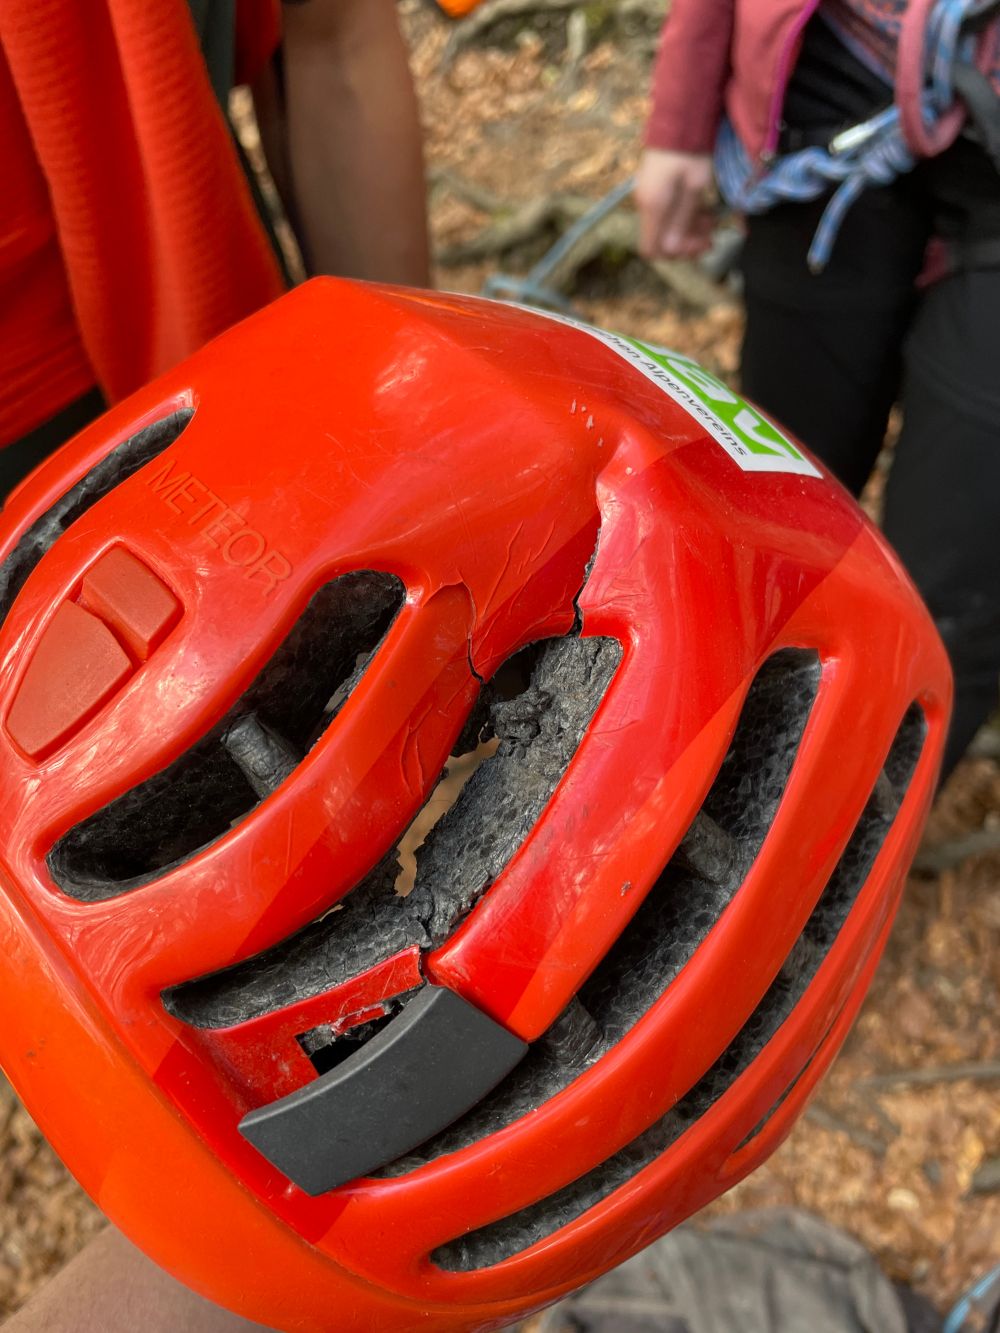 Helme können Leben retten: Nach dem 13-Meter Sturz an den Haselstaudener Wänden sieht der Helm des Verunfallten ziemlich ramponiert. Dadurch blieb sein Kopf unversehrt. (Bild: Polizei Oberfranken)